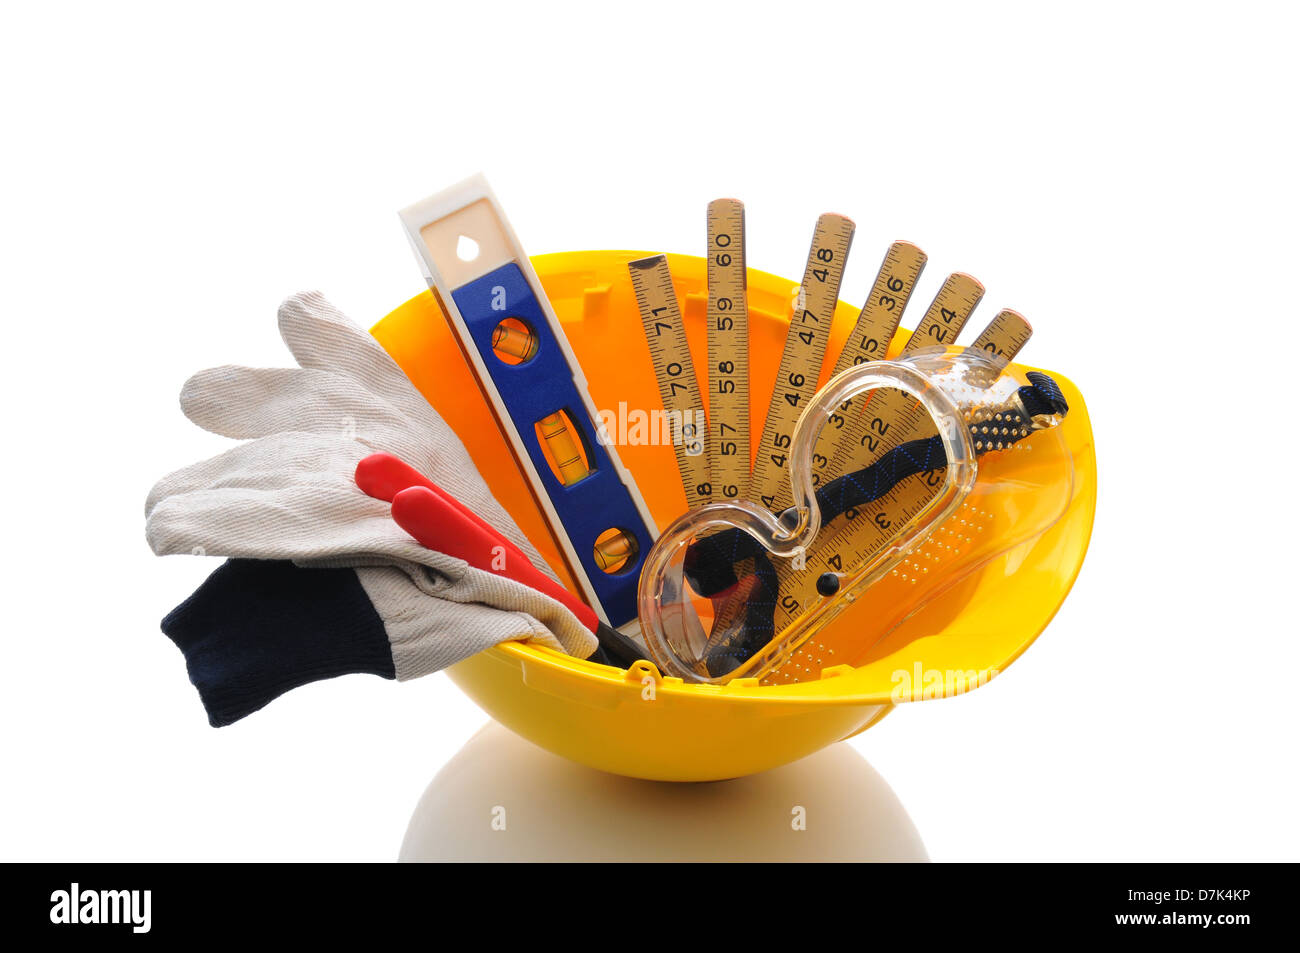 Un casque jaune avec les entrepreneurs des gants de travail et des outils à l'intérieur. Format horizontal blanc avec plus de réflexion. Banque D'Images